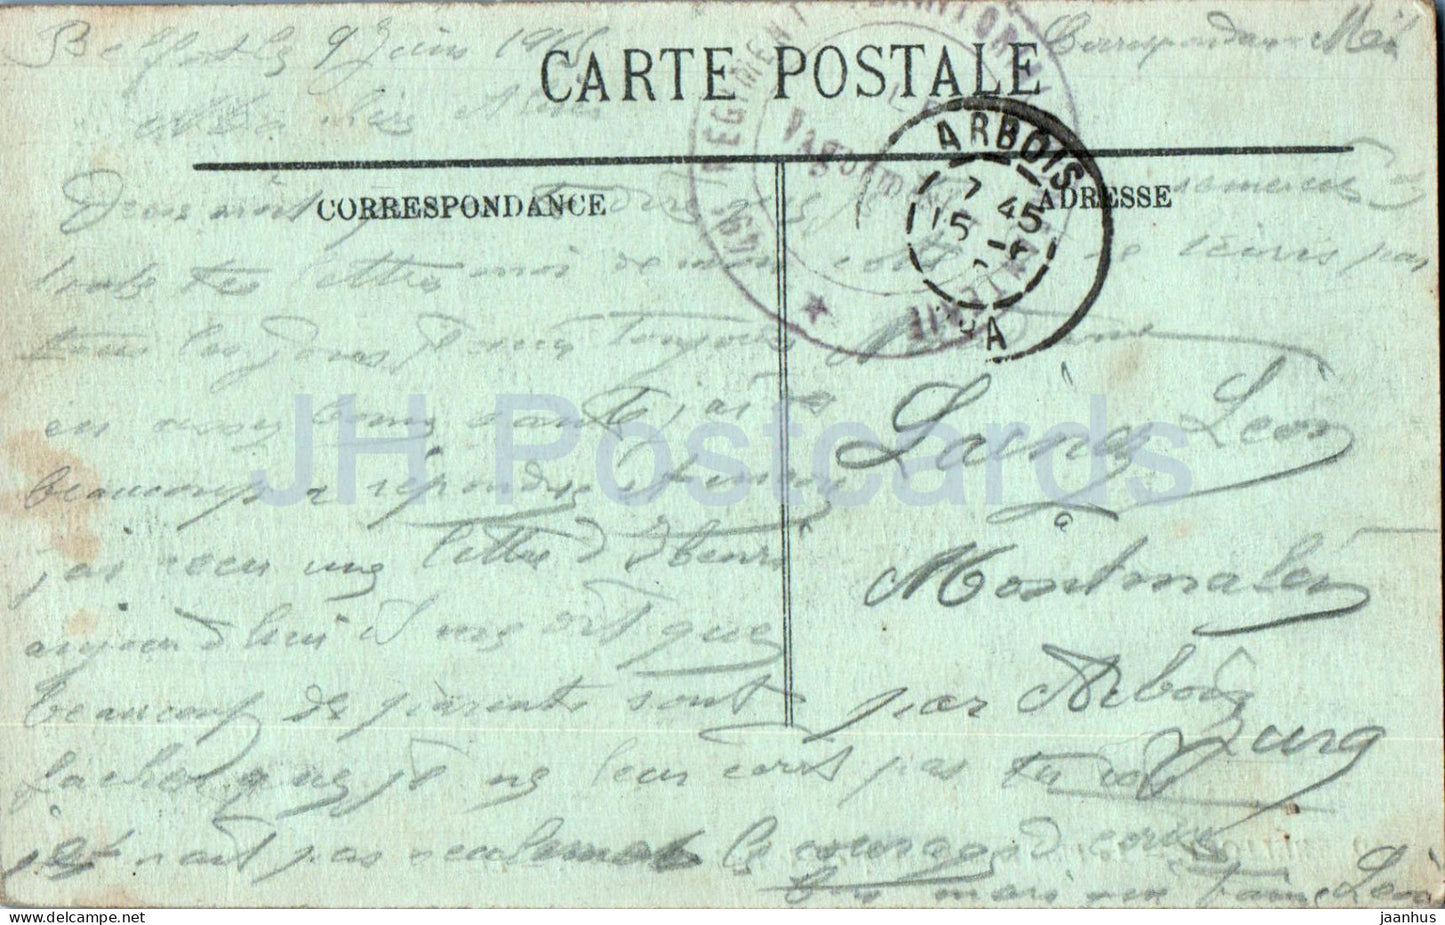 Belfort - La Place de la République et le Boulevard Carnot - Militärpost - 69 - 1915 - alte Postkarte - Frankreich - gebraucht